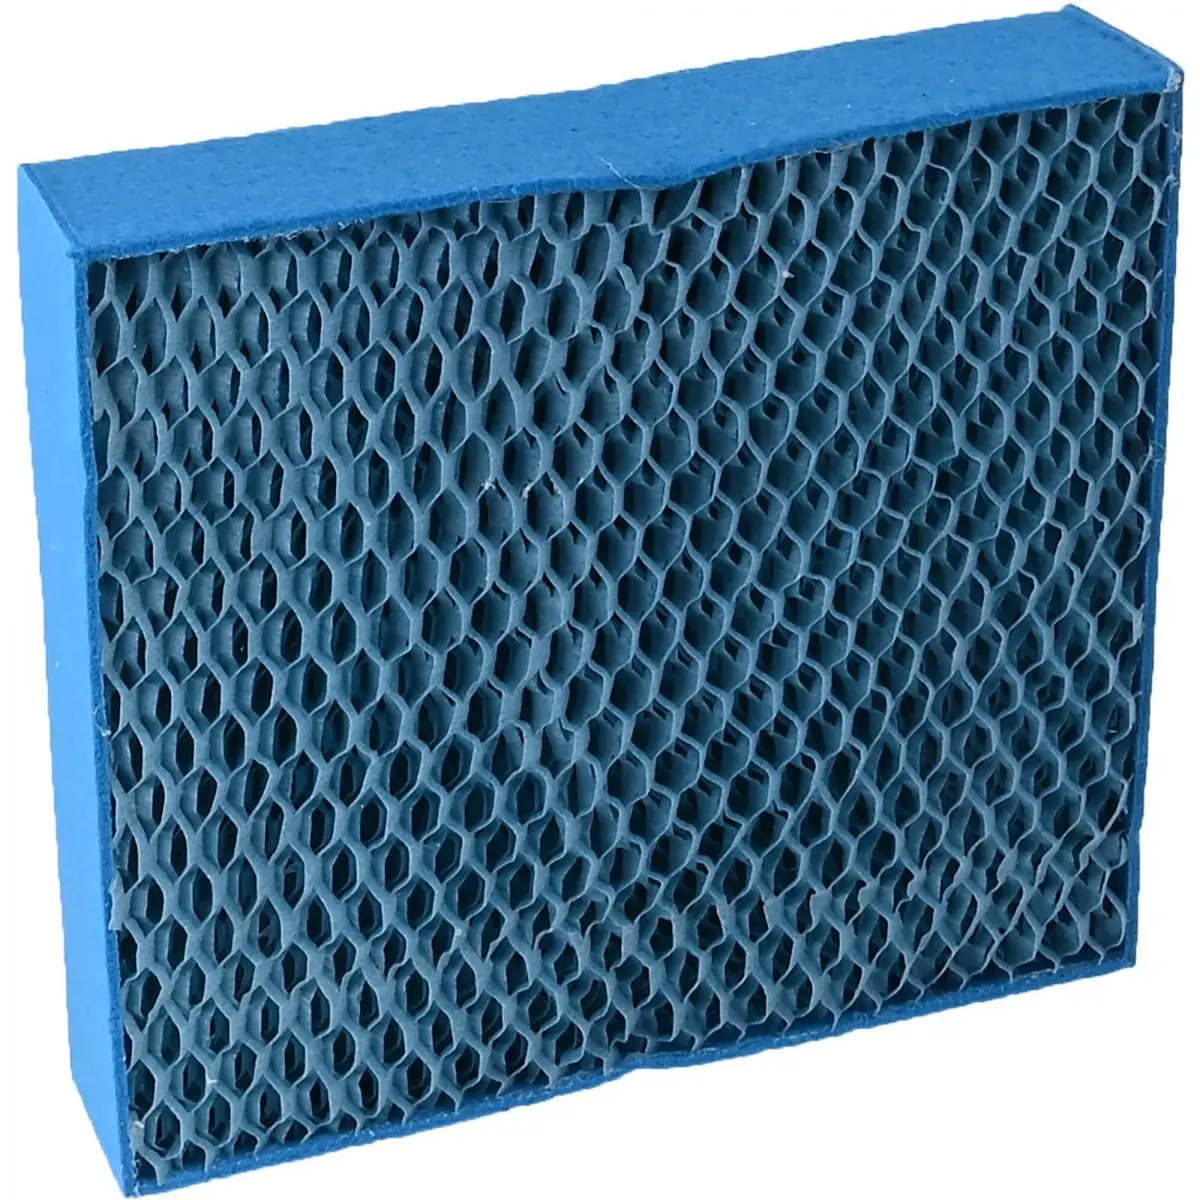 Odparovací chladiaci filter pre klimatizáciu TotalCool3000, 2 ks.